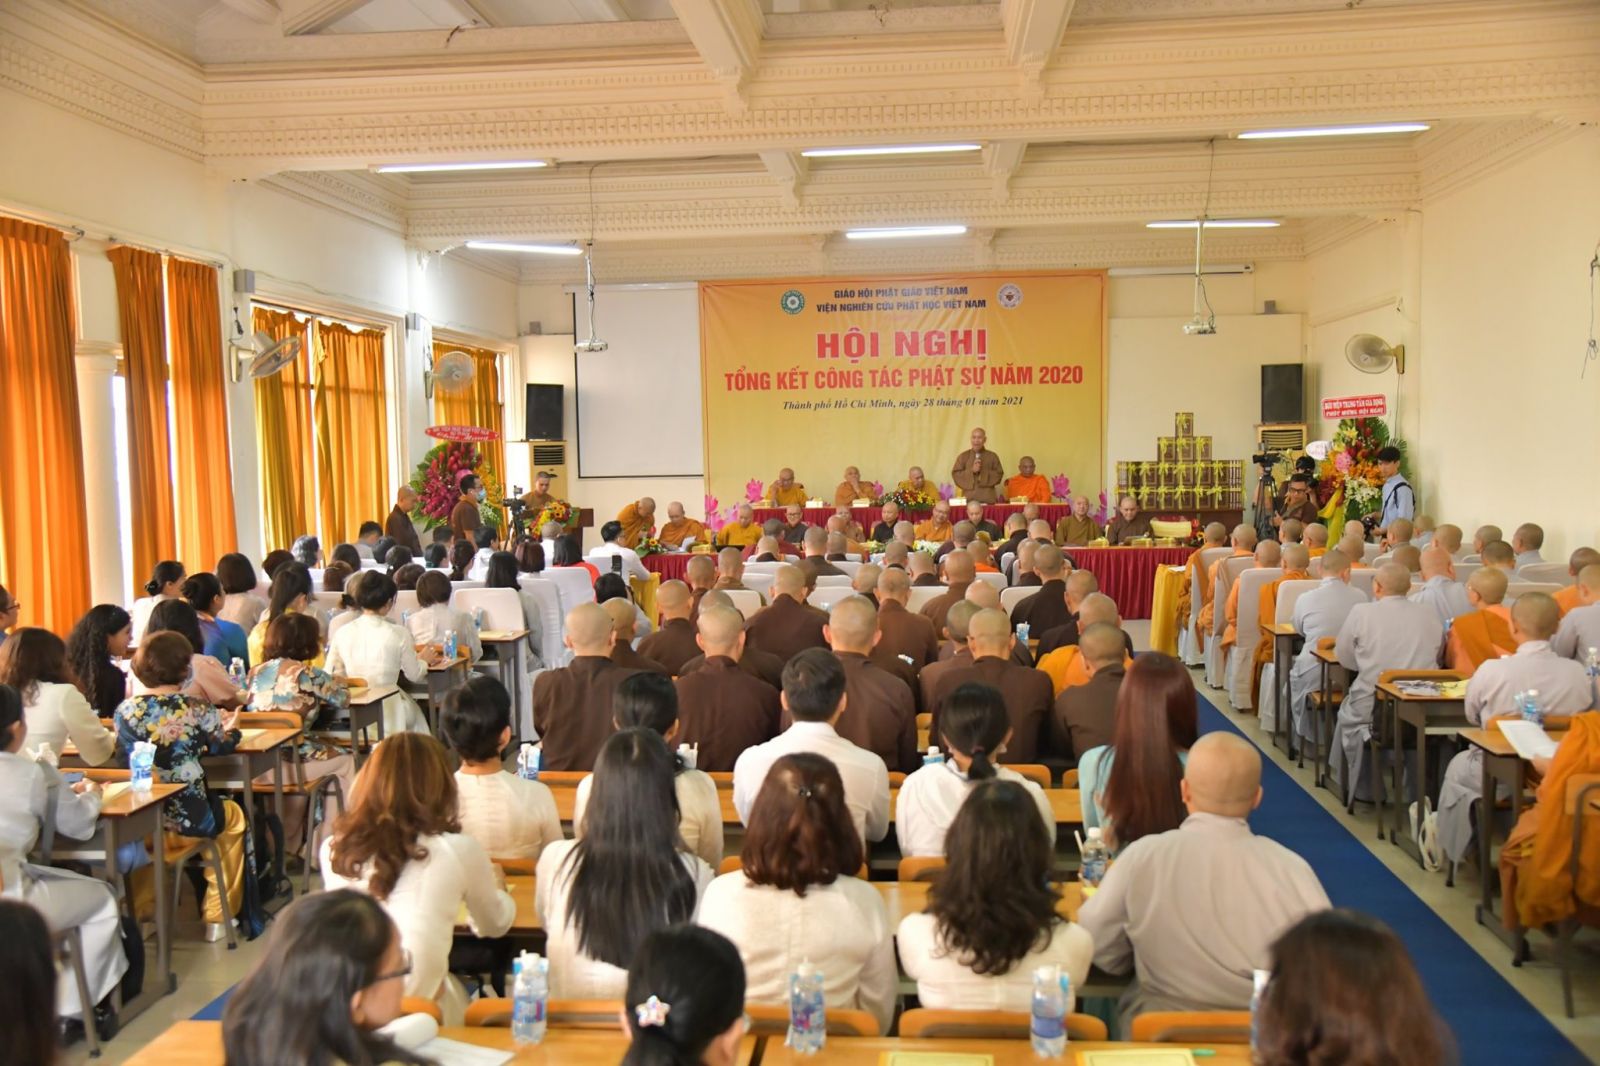 Viện Nghiên cứu Phật học Việt Nam tổng kết Phật sự 2020